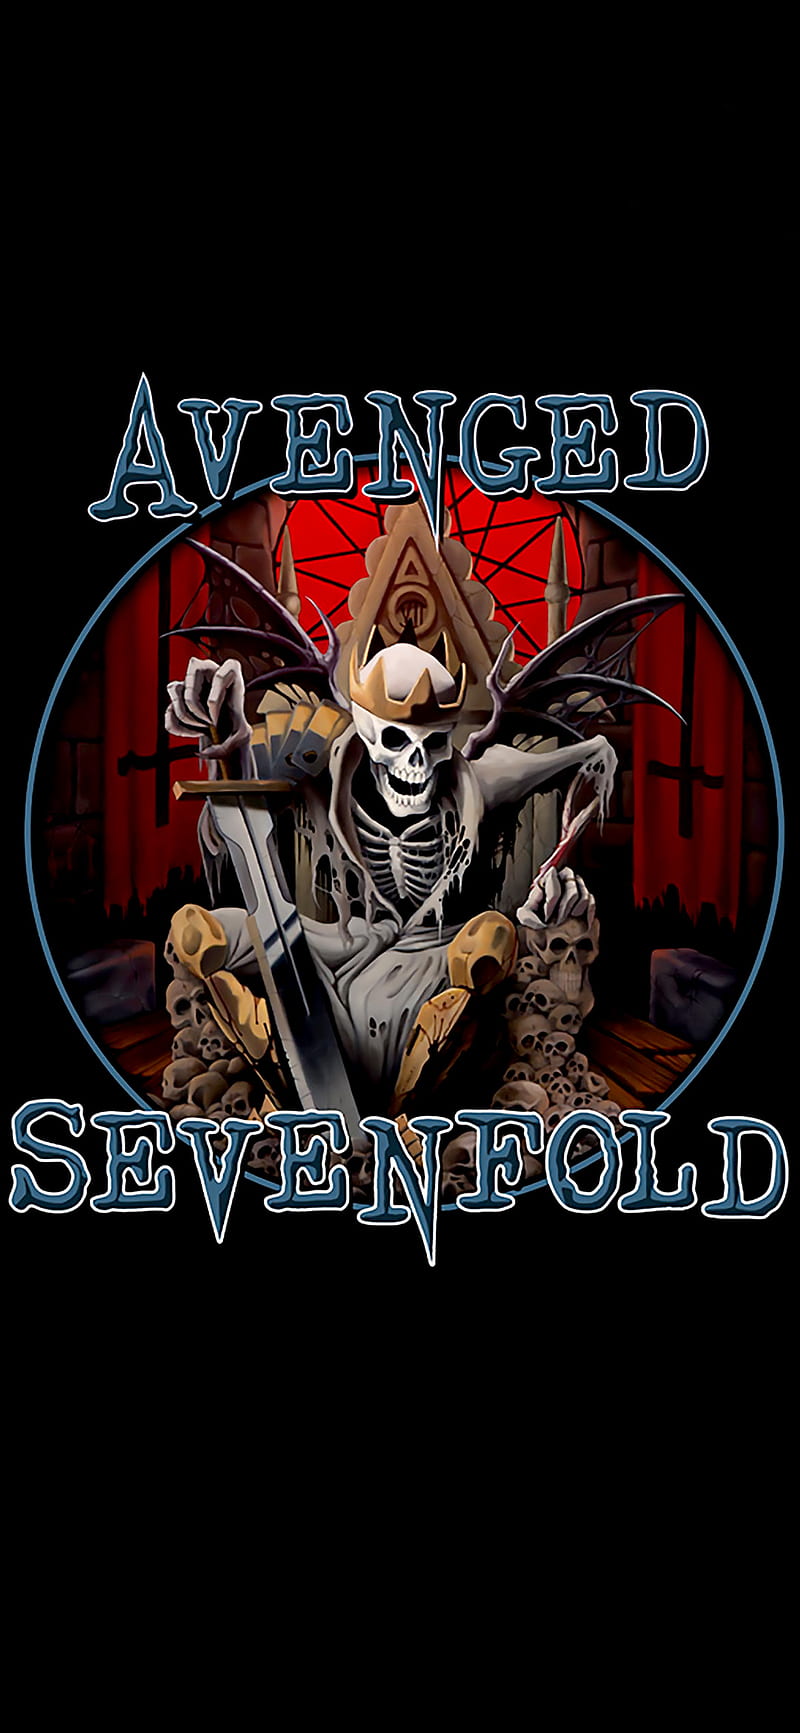 Avenged Sevenfold, album art, album cover, mobile background, HD phone wallpaper